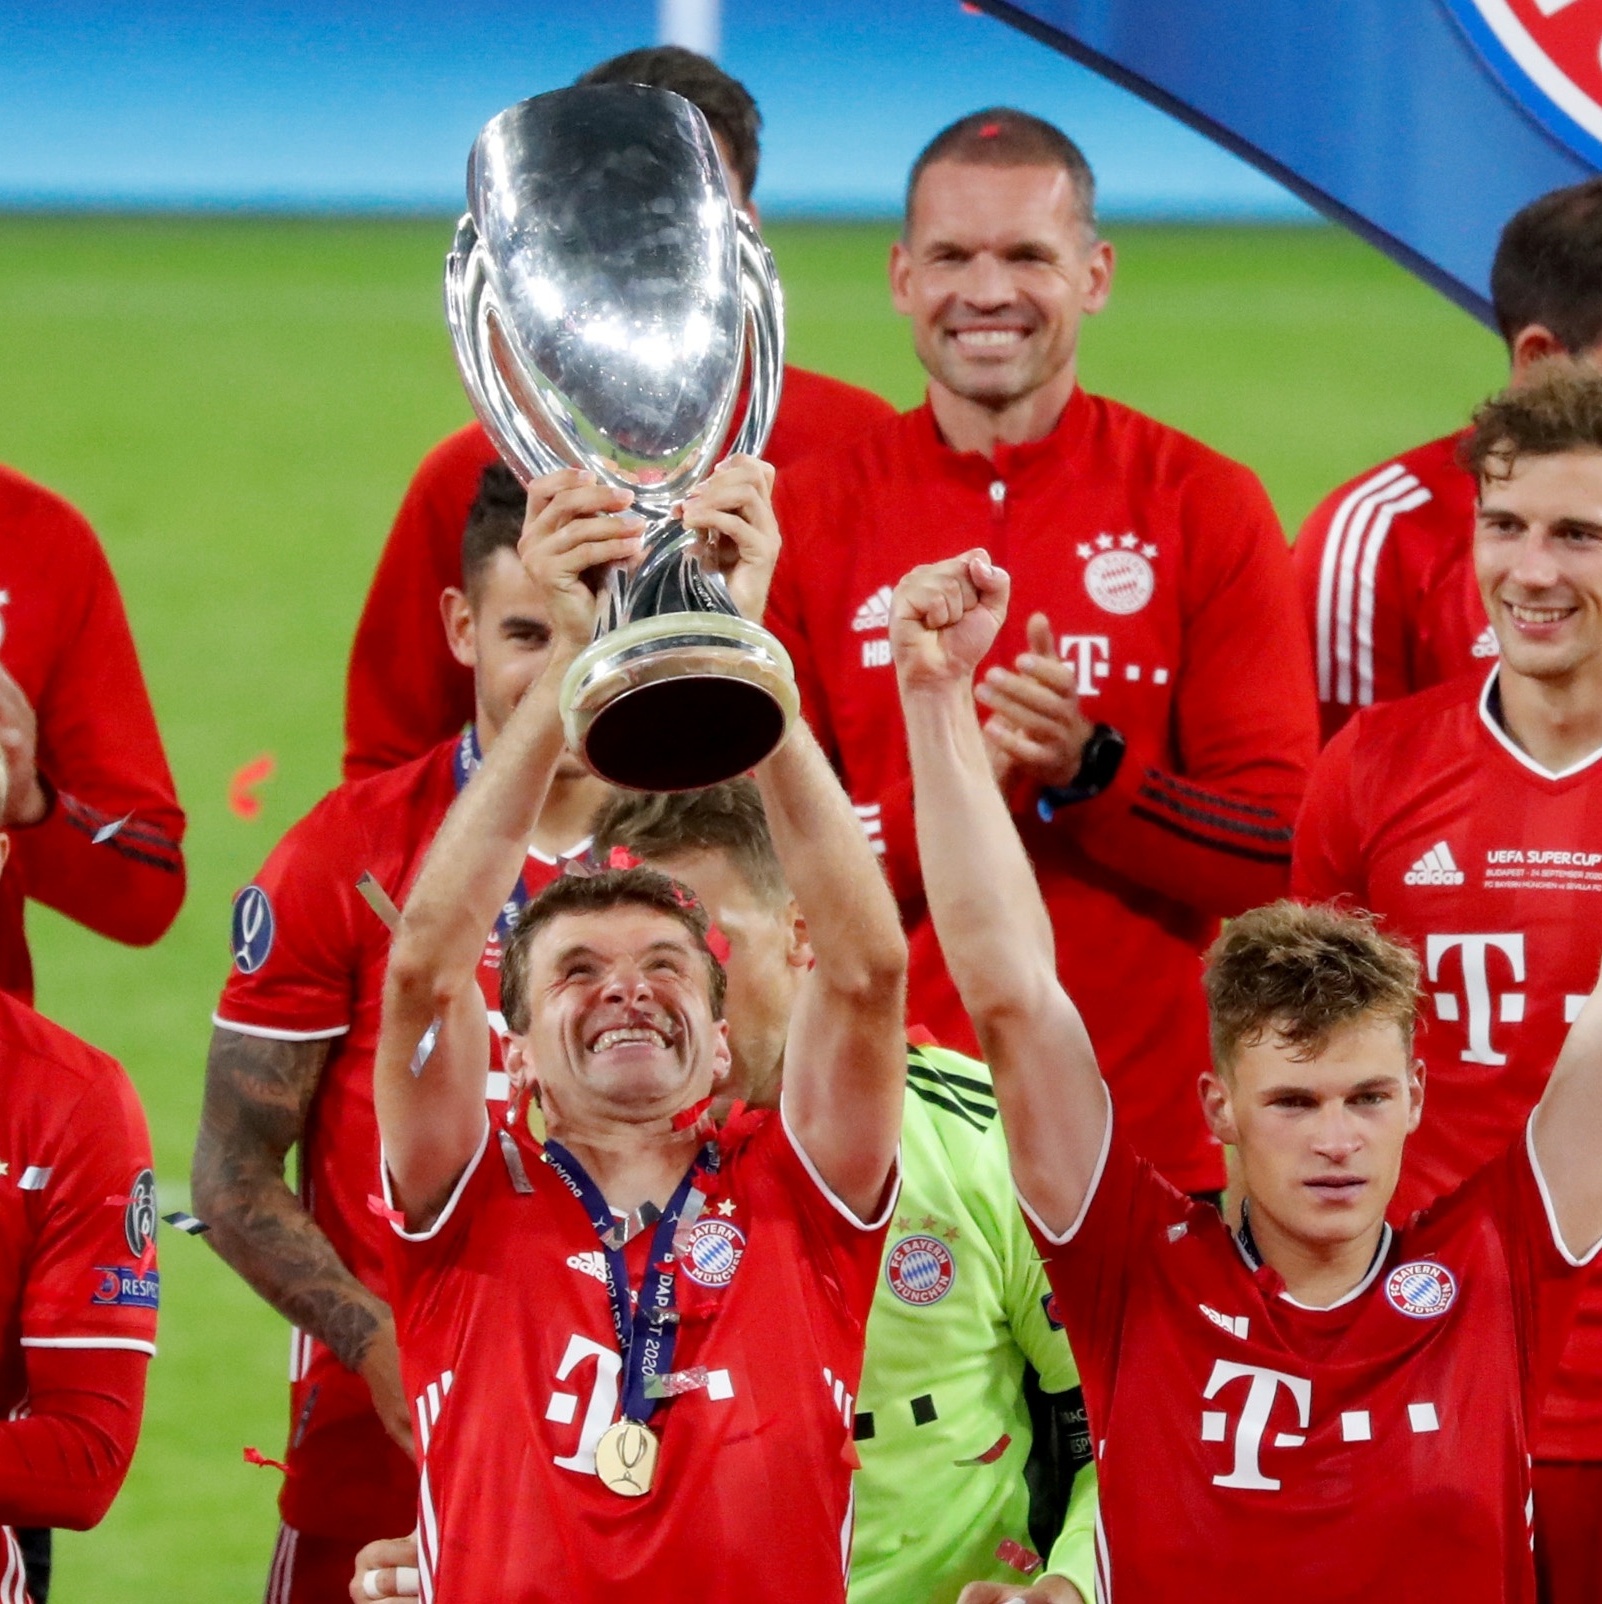 Bayern é campeão mundial pela 4ª vez e estabelece recorde europeu -  11/02/2021 - Esporte - Folha